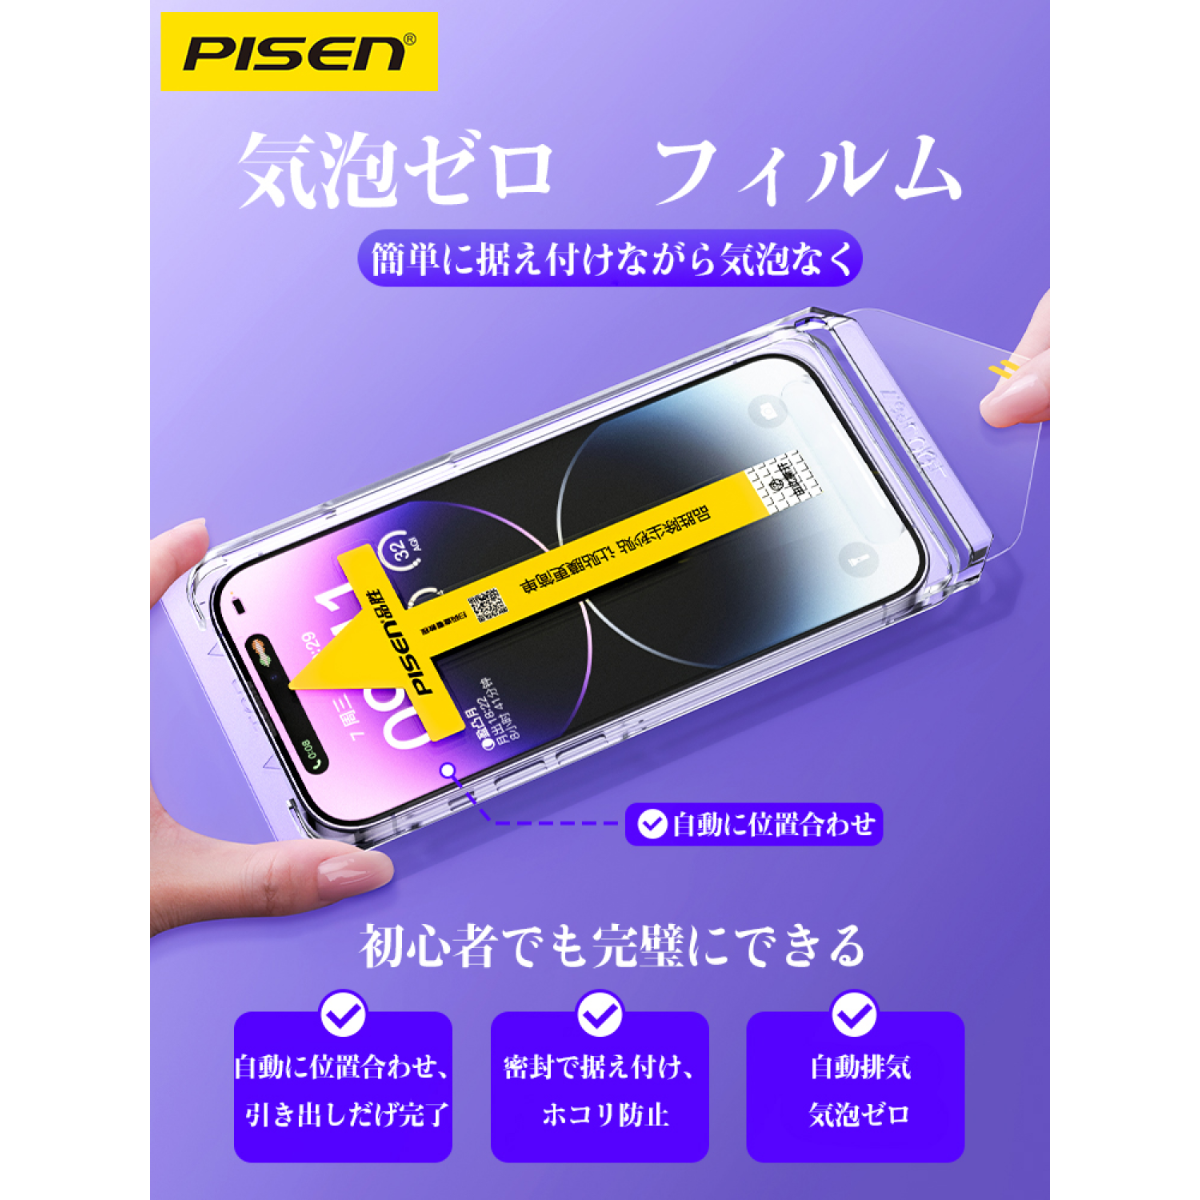 「新品初発売」 Pisen iPhone 防塵ガラスフィルム ｜防塵ガイド枠付き 据え付け超簡単